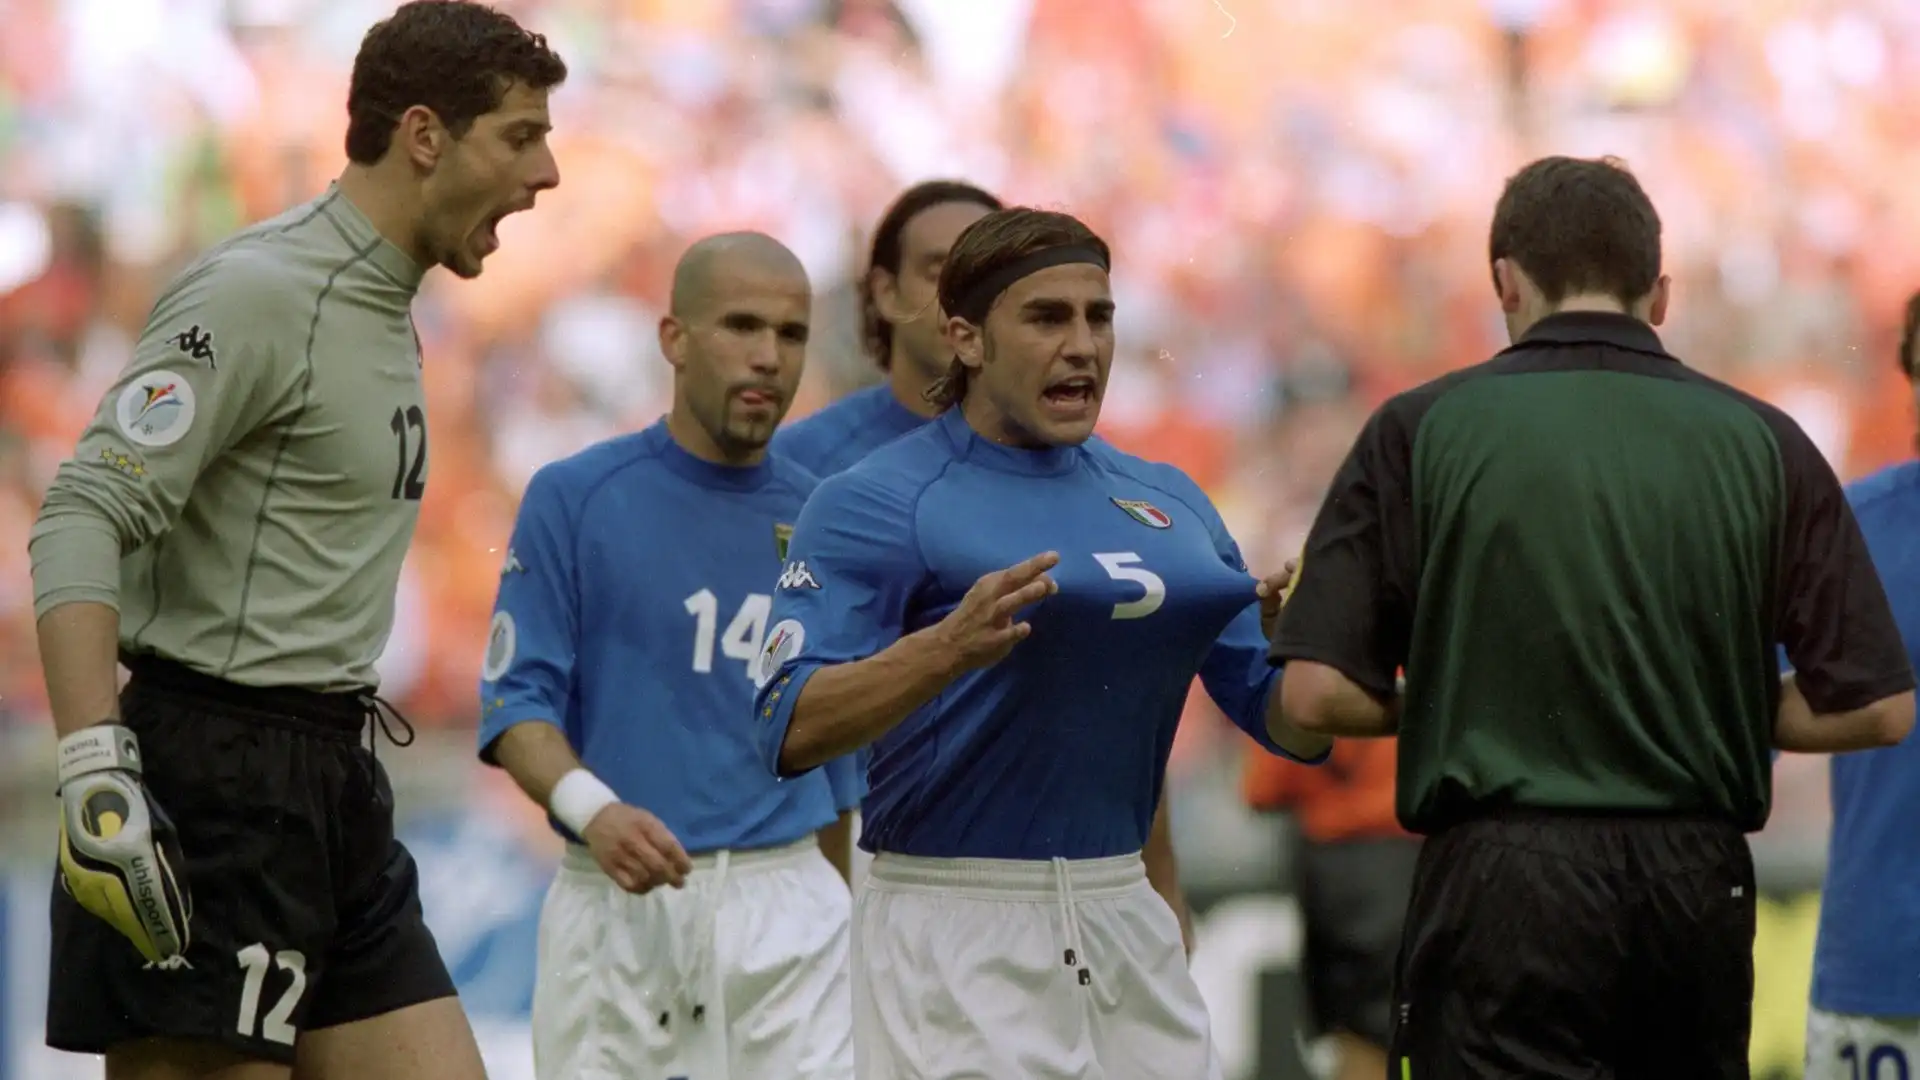 Compie cinquant'anni Fabio Cannavaro, uno dei più forti difensori ad avere giocato in Italia